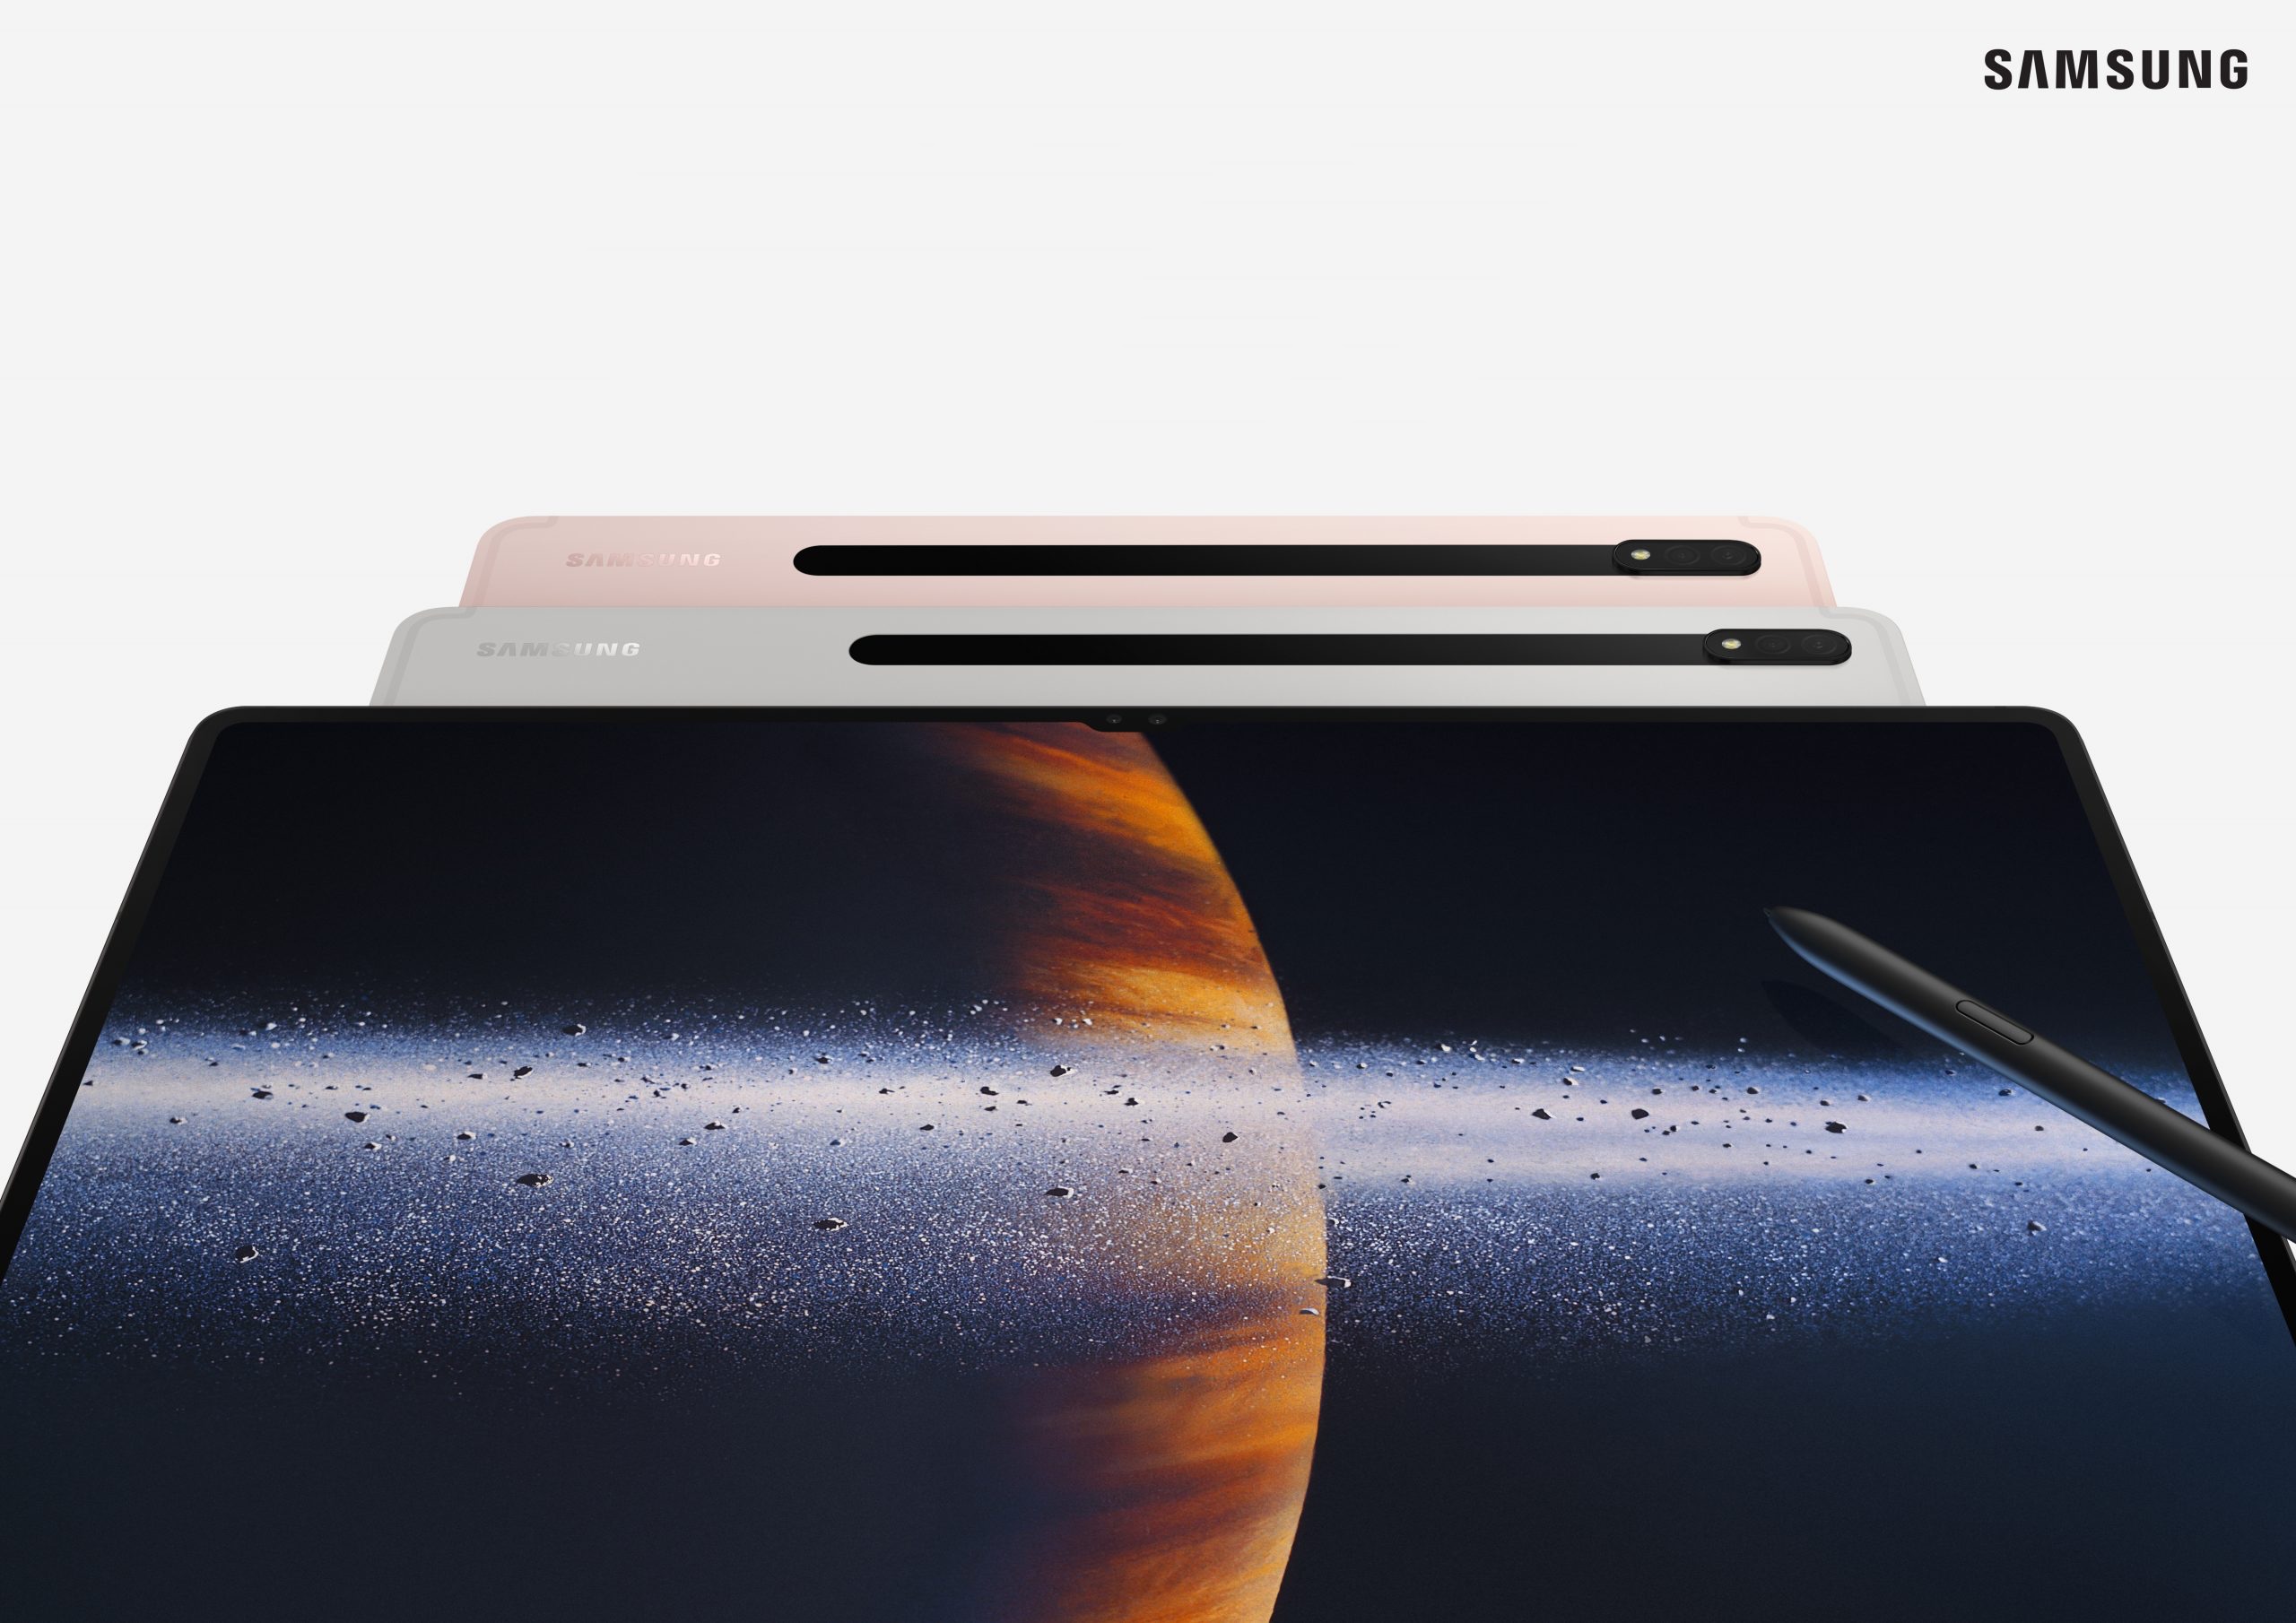 Écrans OLED, Snapdragon 8 Gen 2 pour les puces Galaxy et protection IP67 : de nouveaux détails sur les tablettes Galaxy Tab S9 sont apparus en ligne